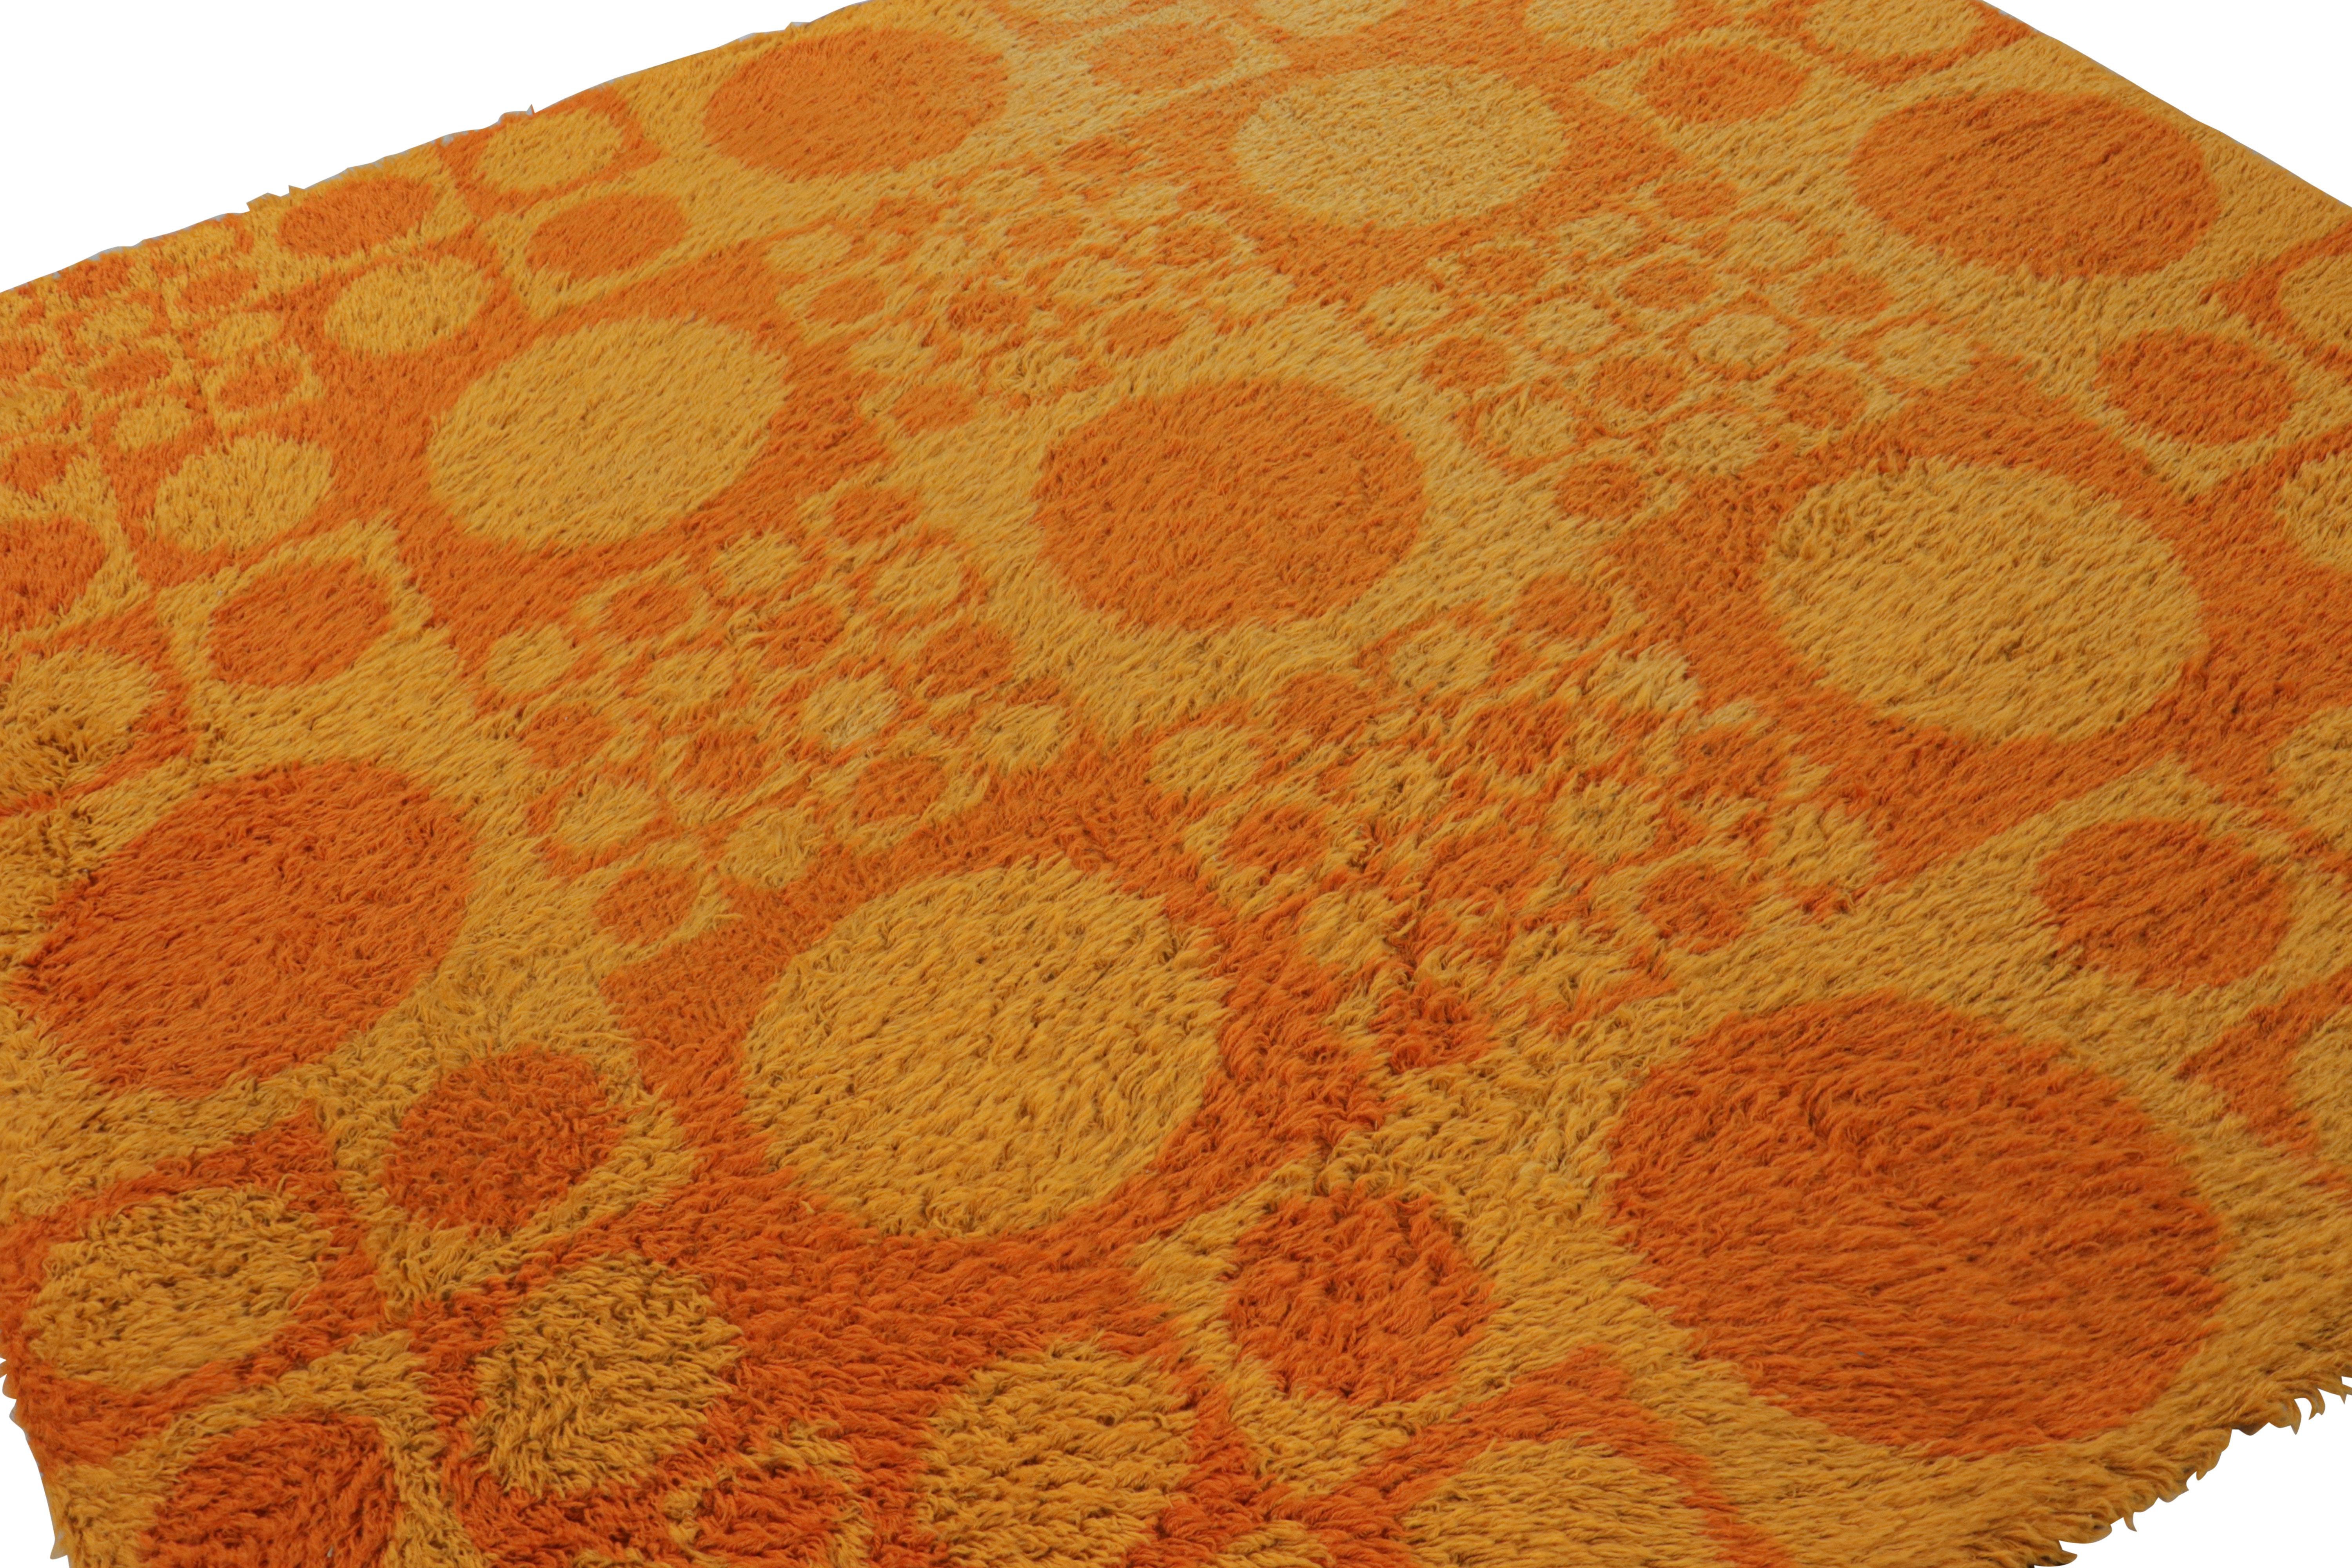 Dieser quadratische skandinavische Teppich im Format 7x7 aus reiner Wolle (ca. 1960-1970) ist ein seltenes Design des Künstlers Verner Panton aus der Mitte des Jahrhunderts. Dieser dänische Ege-Rya-Teppich, von dem man annimmt, dass er für Unika